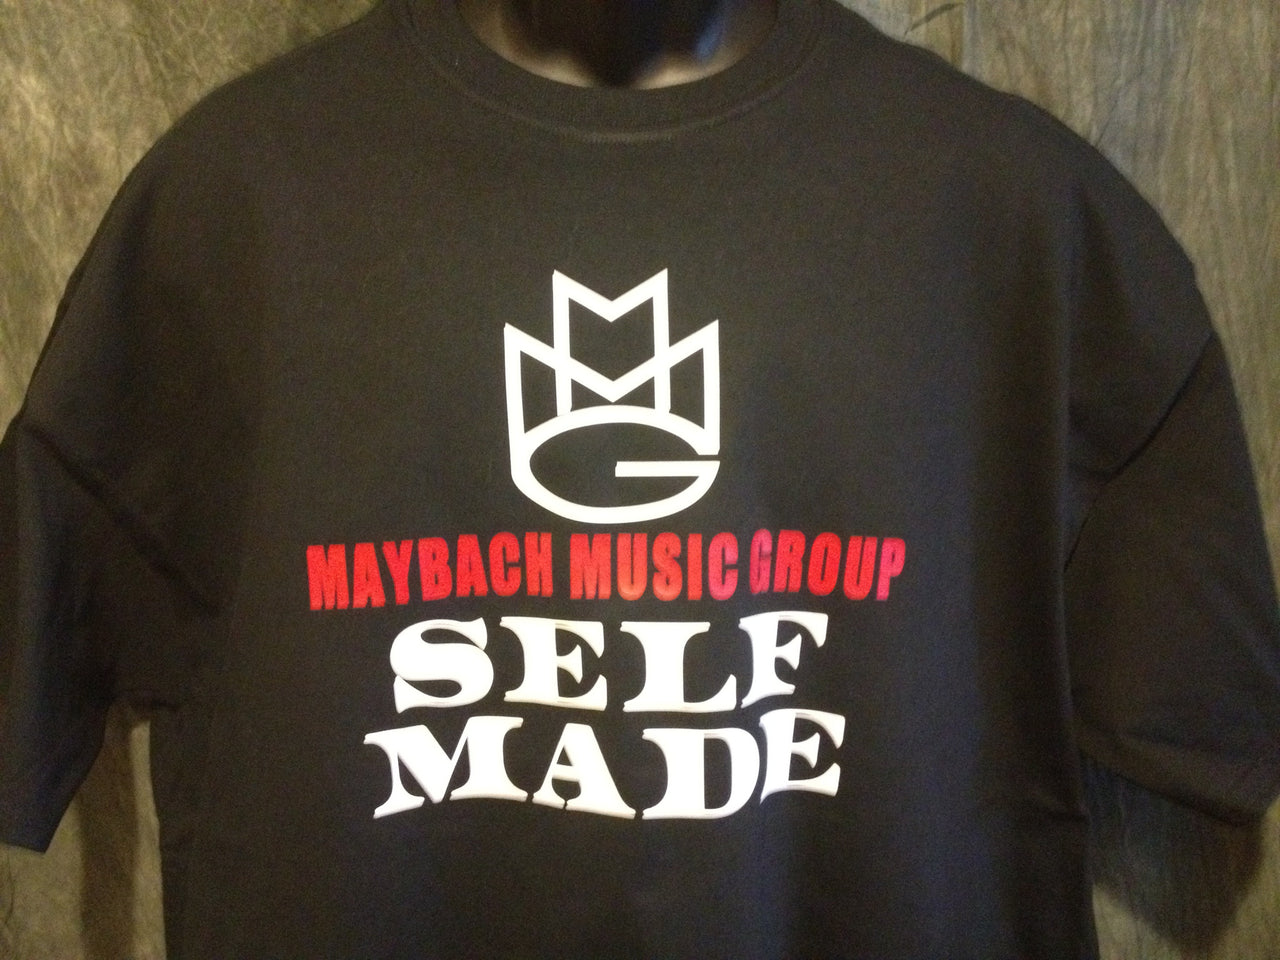 Maybach Music Group "Self Made" Tshirt - TshirtNow.net - 8